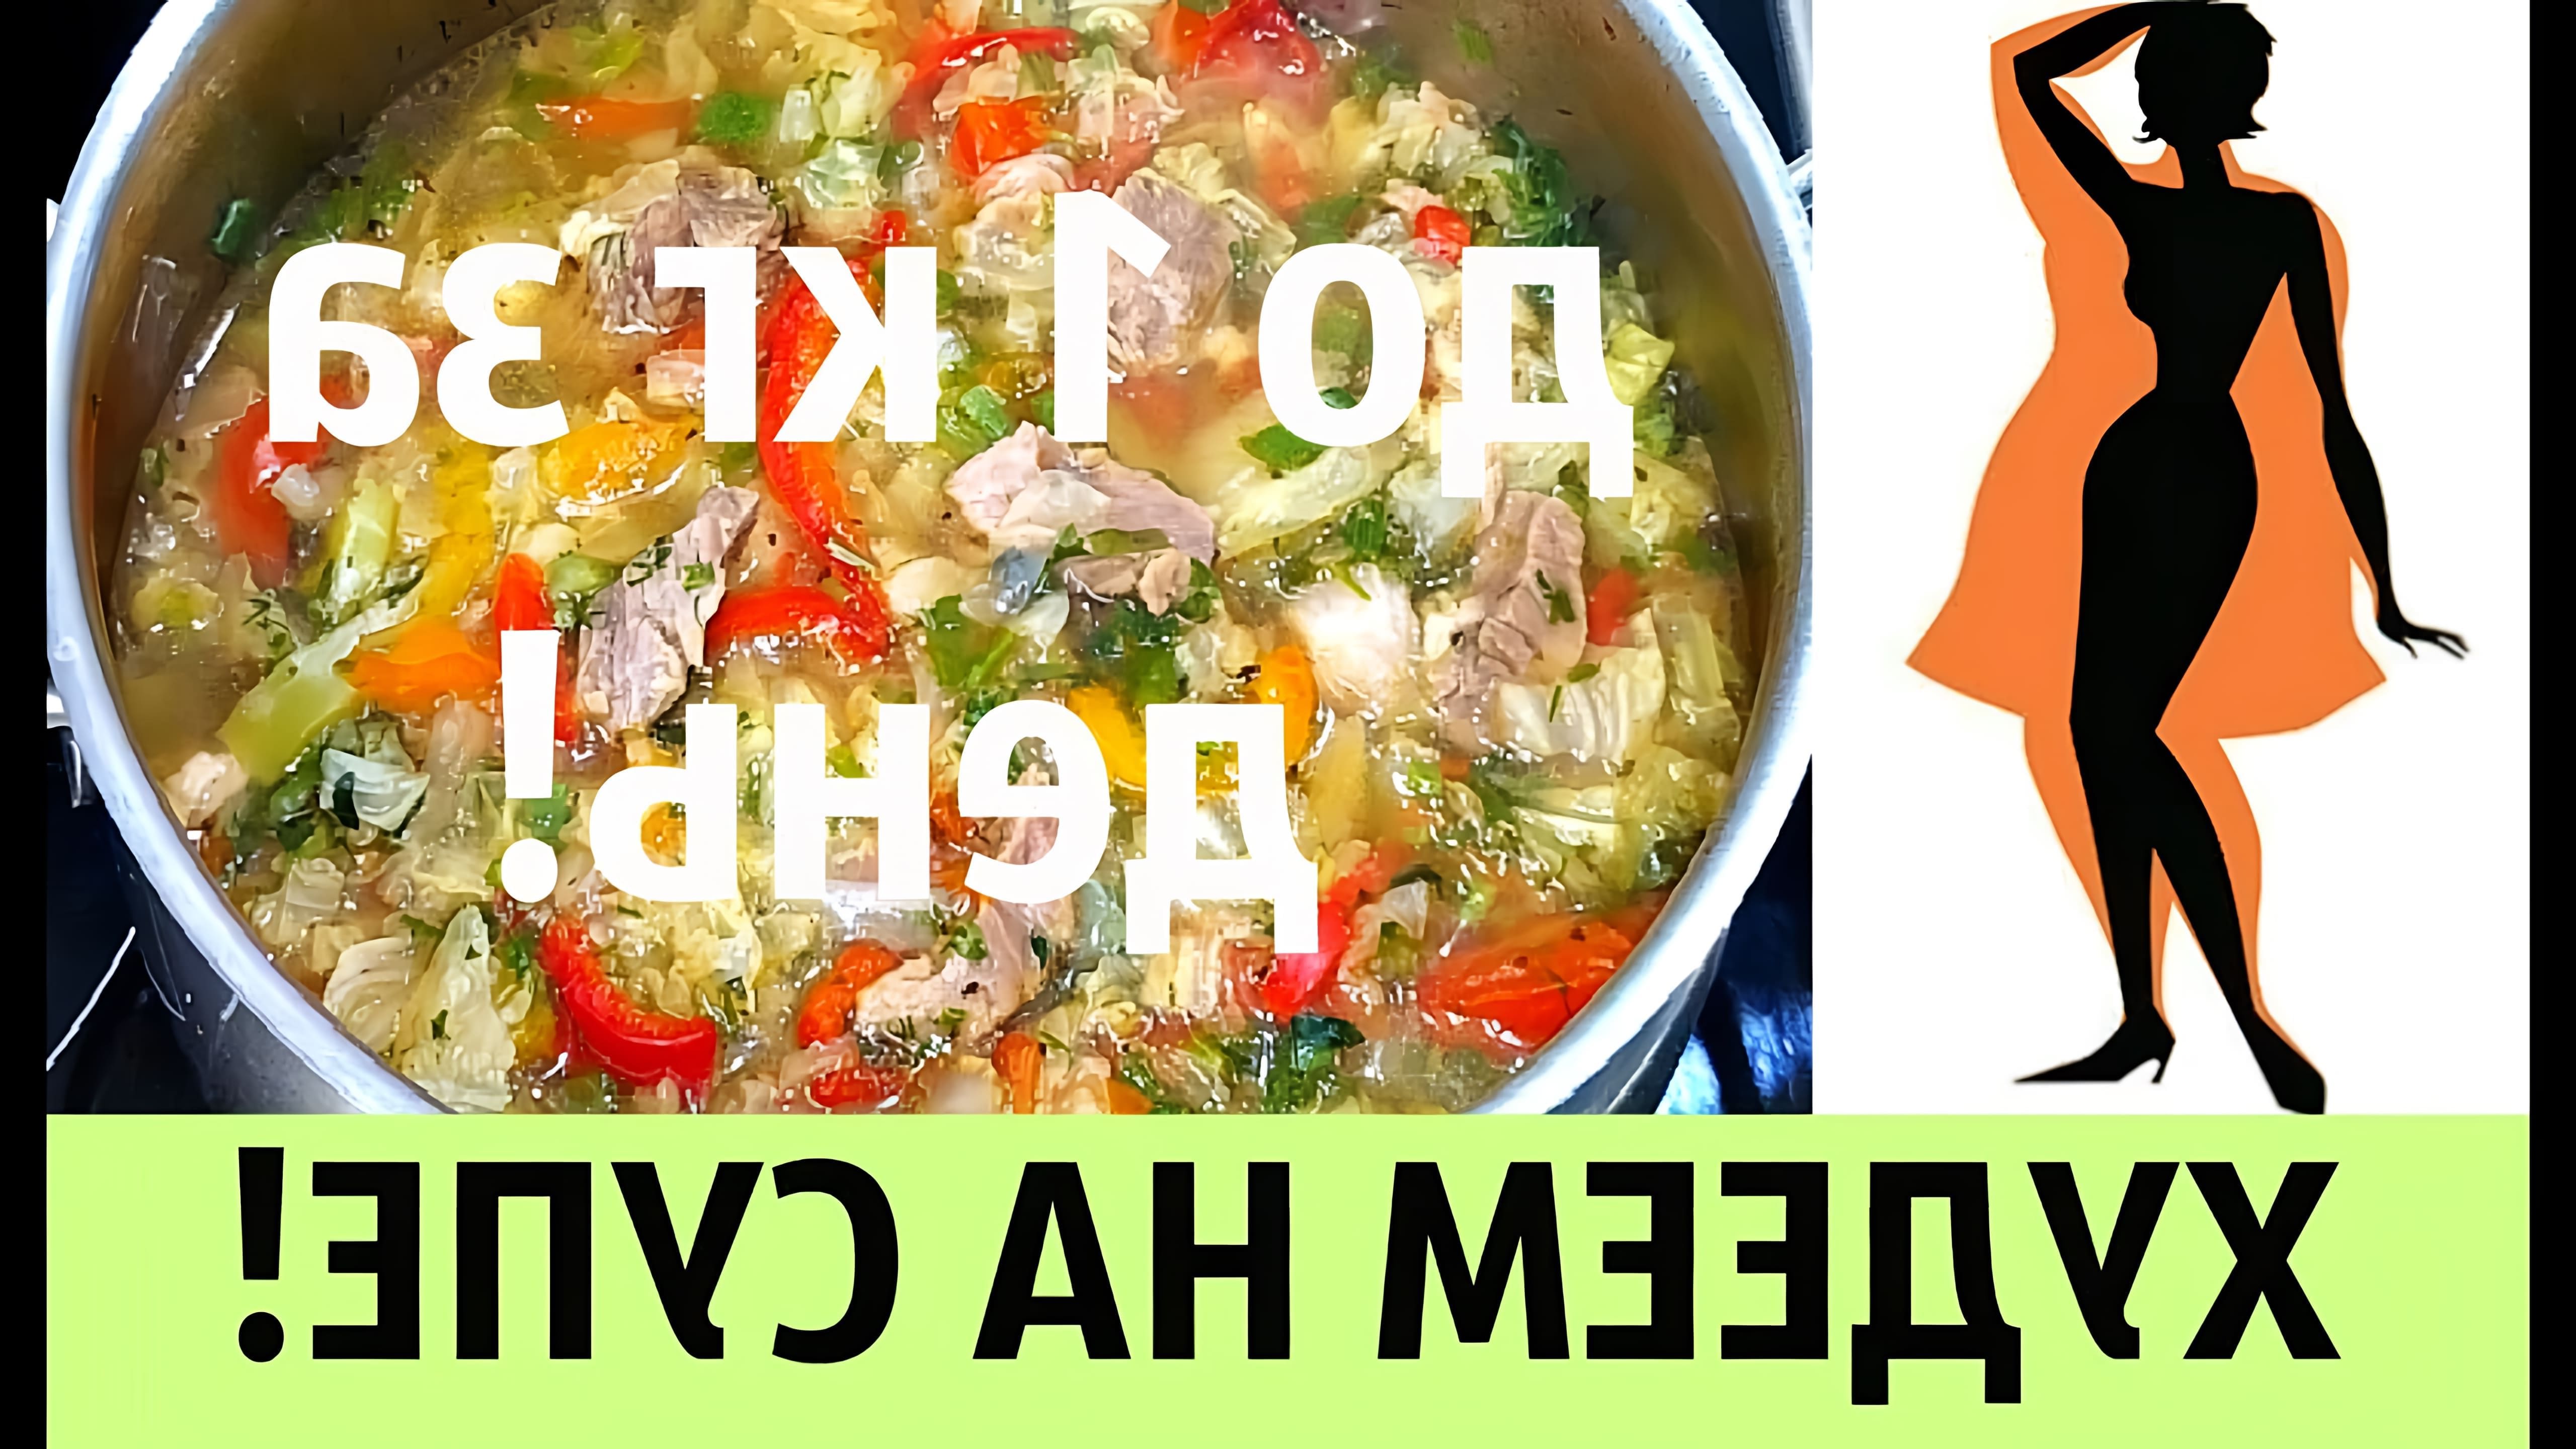 В этом видео демонстрируется рецепт супа для похудения, который можно употреблять в течение одного дня